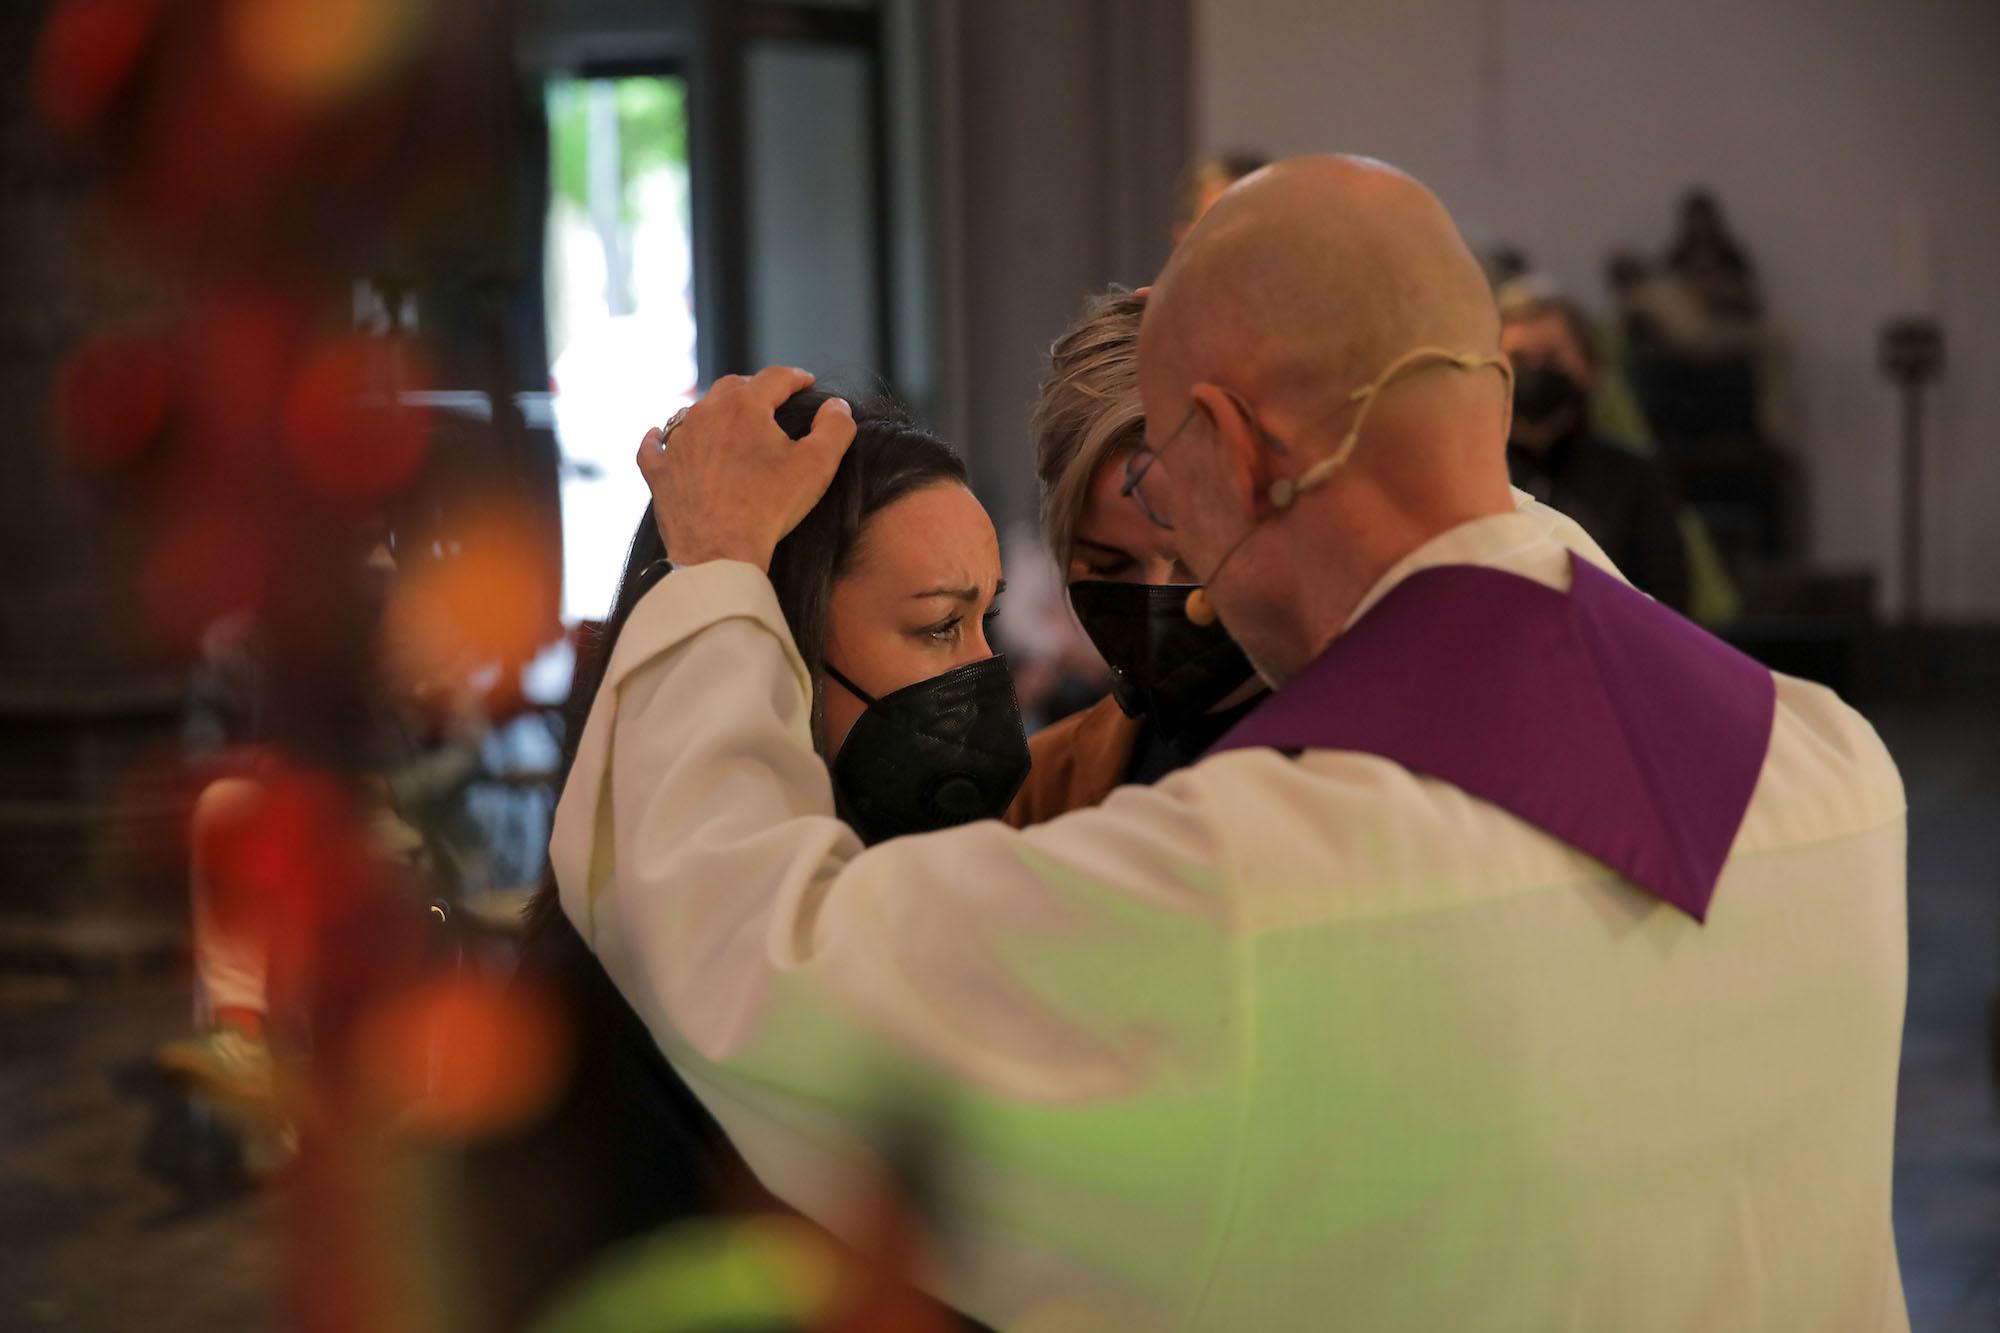 Welche Bedeutung die Segnung durch Pfarrer Christoph Simonsen hat, zeigt sich deutlich in den tief berührten Gesichtern des Paars.